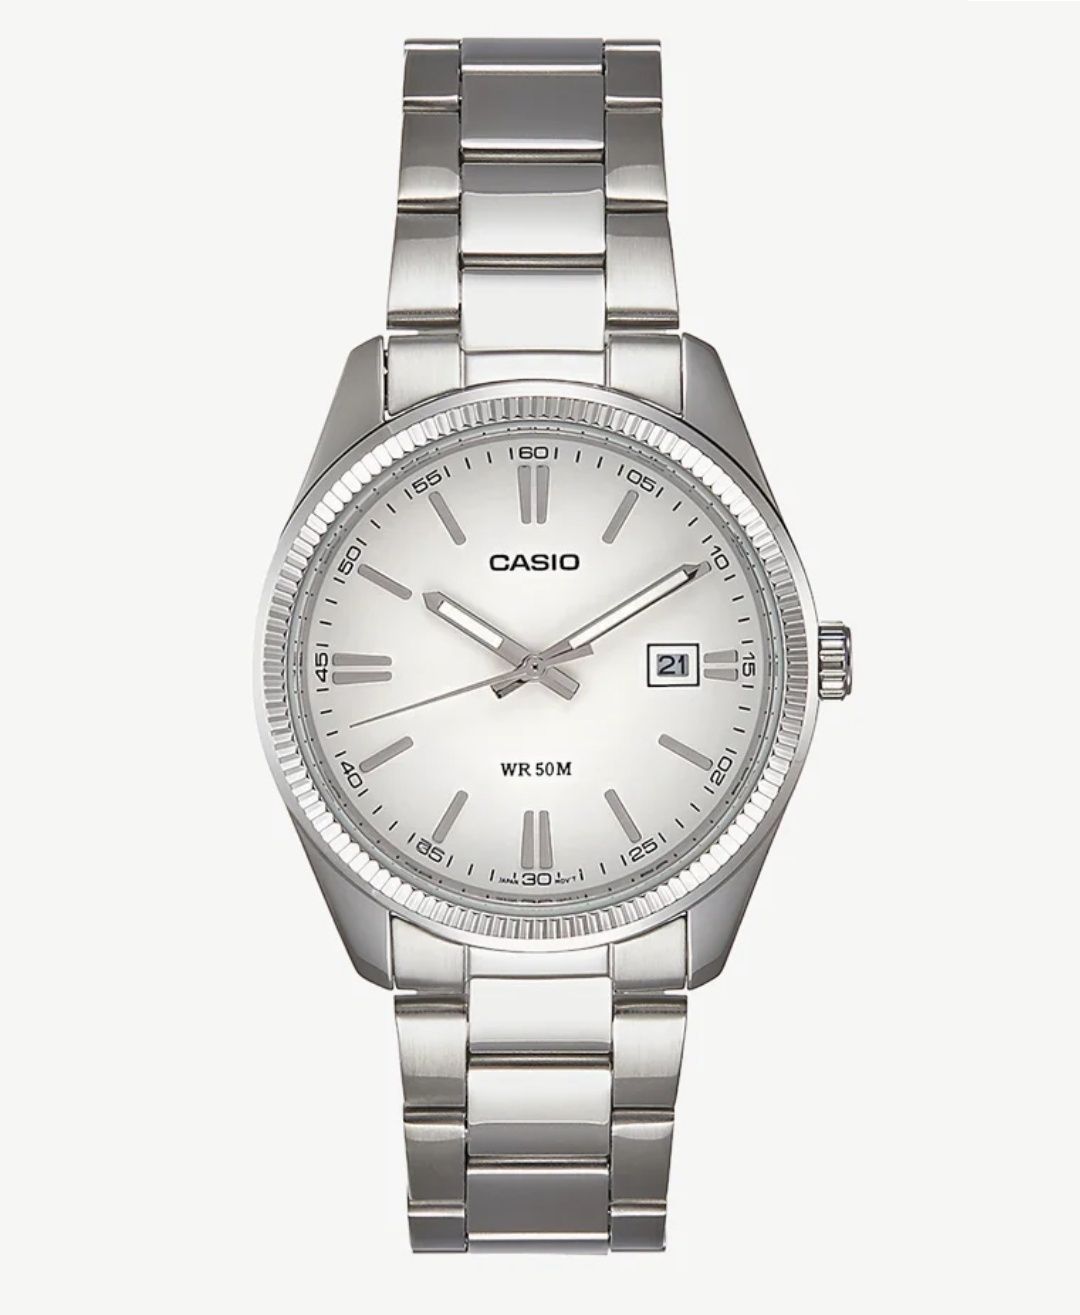 Мужские часы Casio Tiffany MTP 1302PD 2A2VEF оригинал